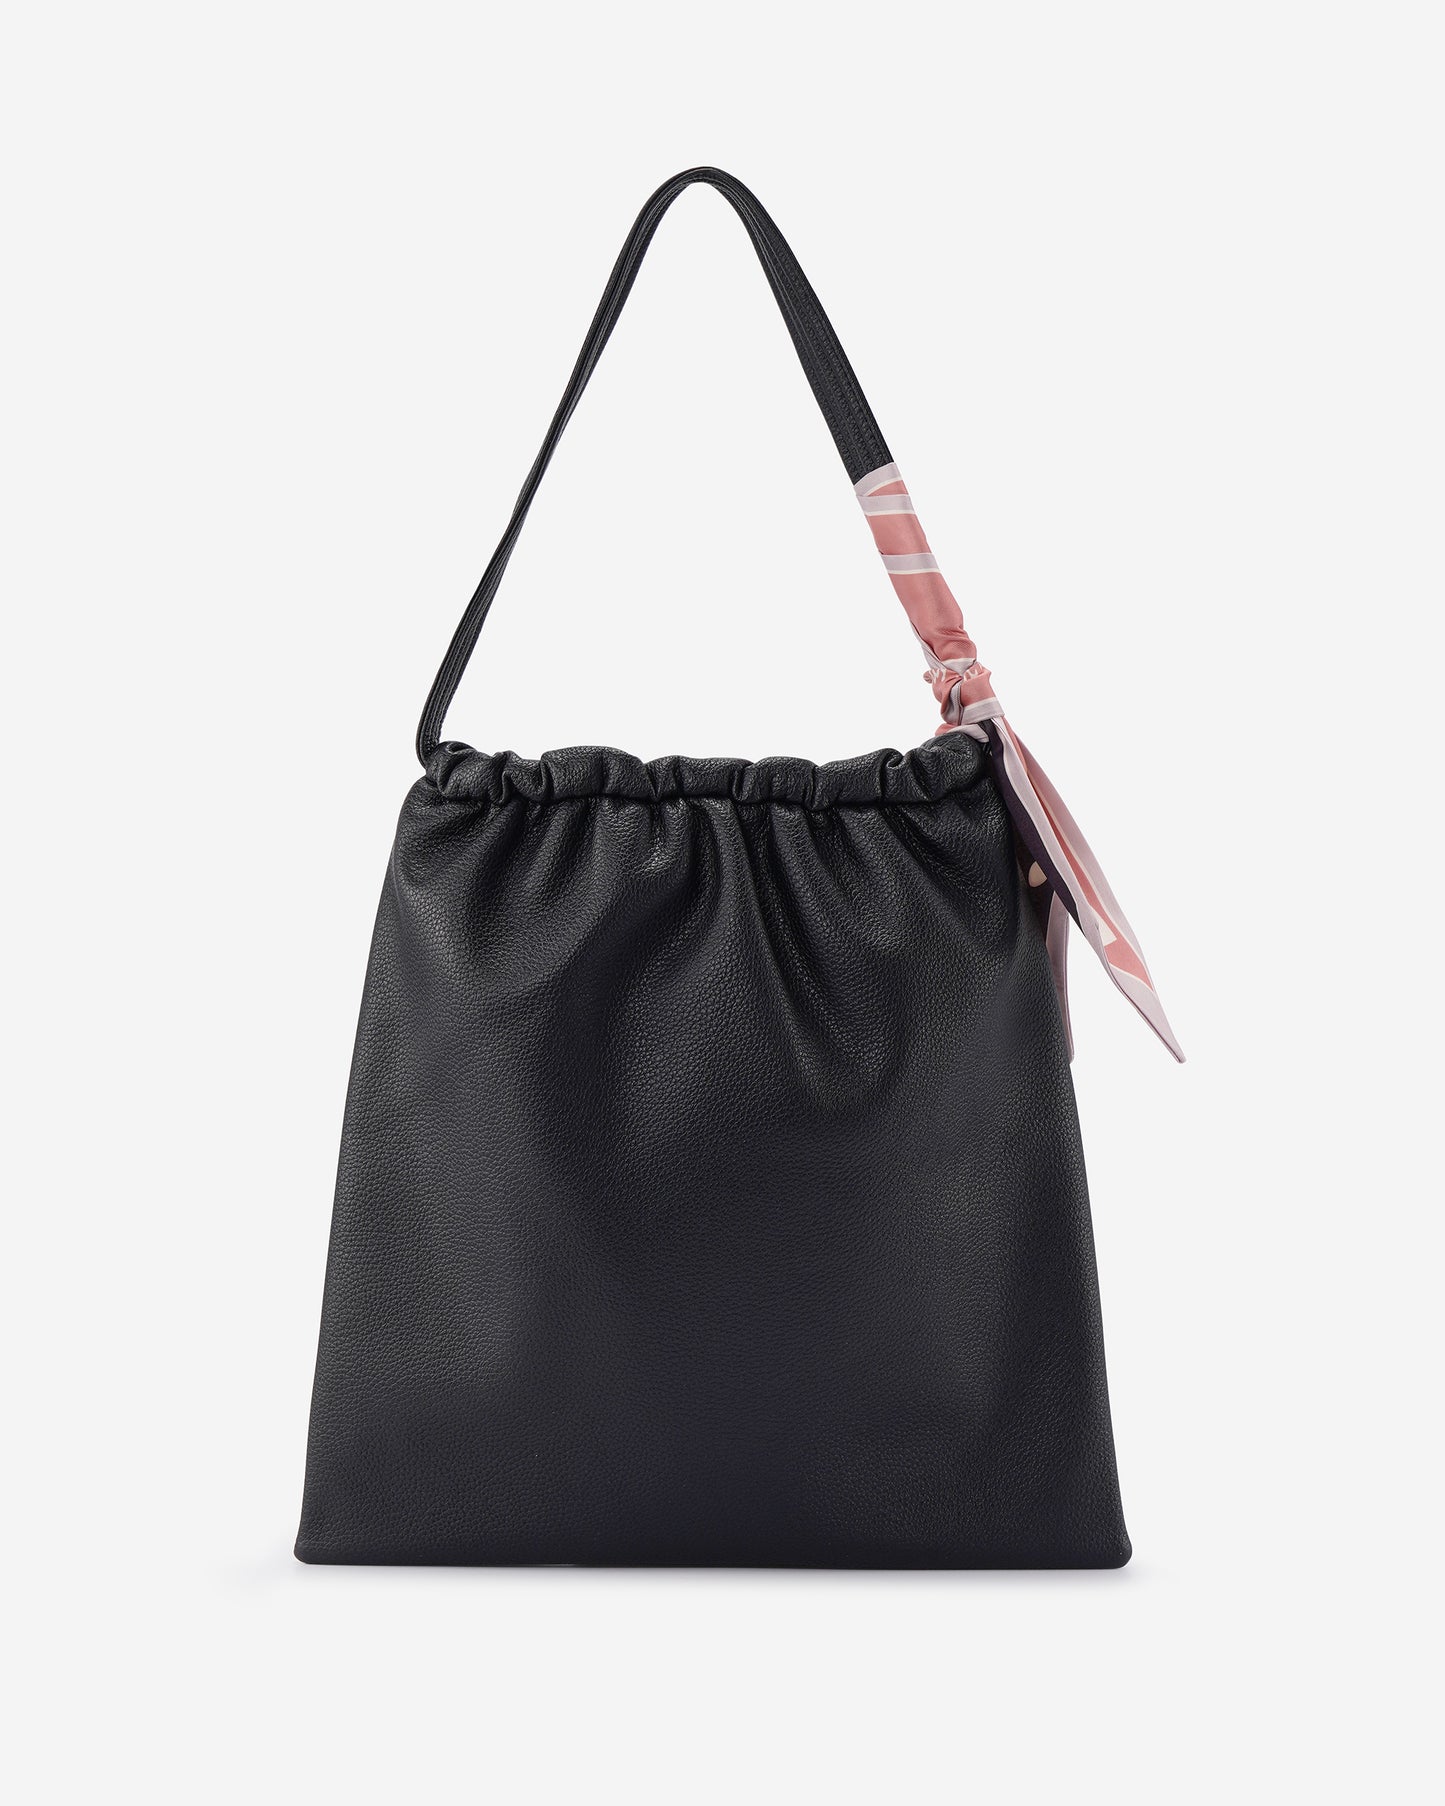 Dulcet Project Women Minimalist Style Shoulder Bag-Black